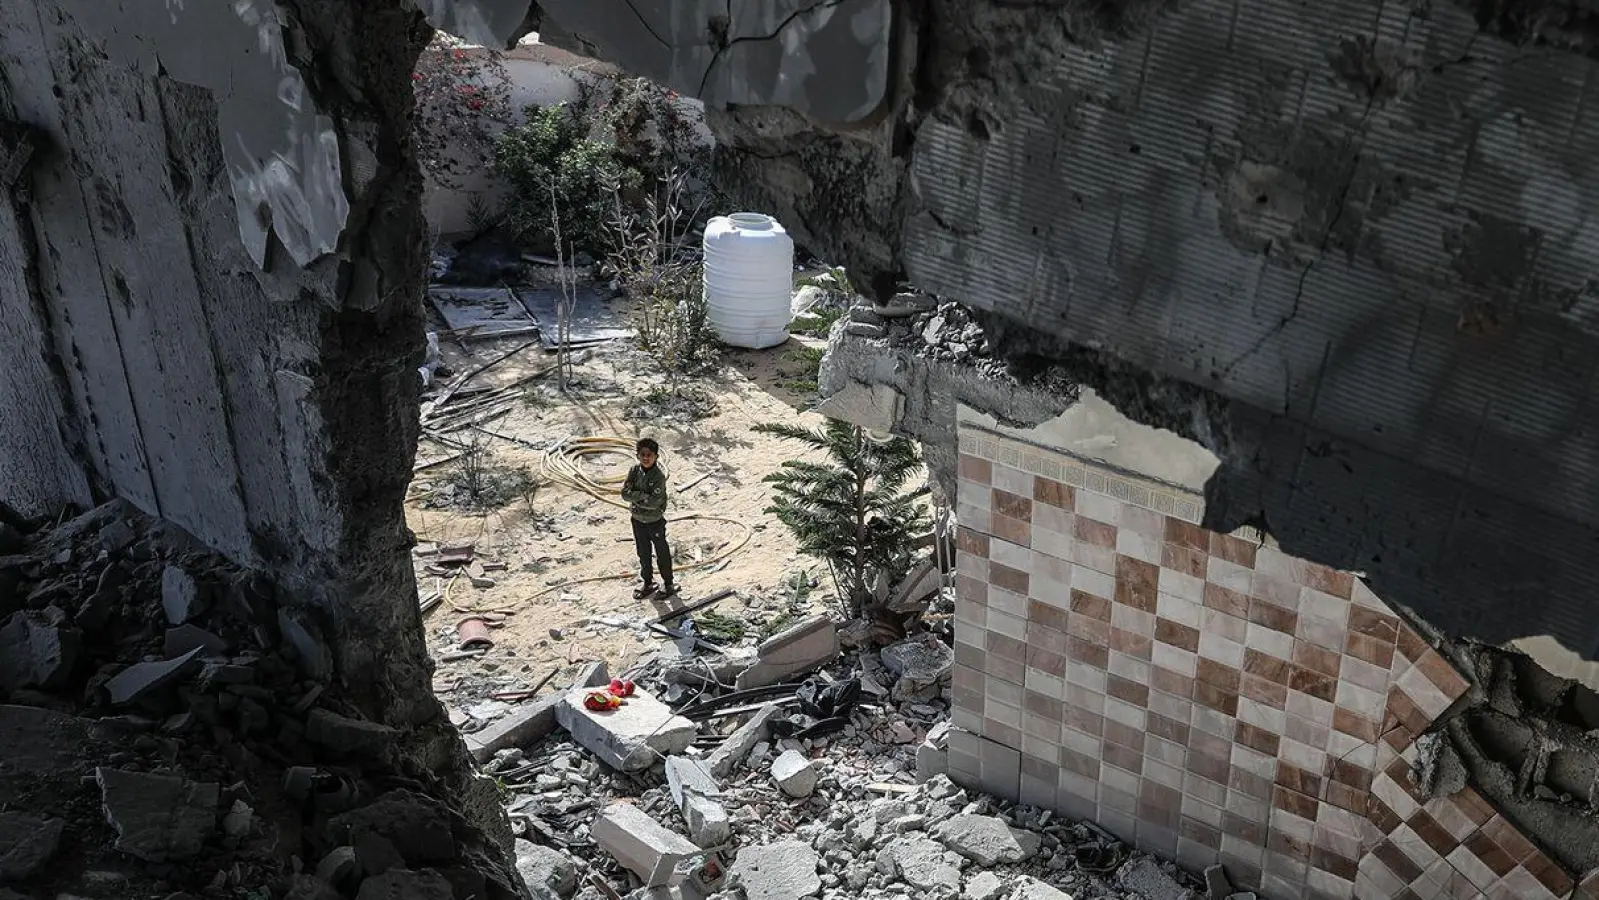 Palästinenser inspizieren die Trümmer eines zerstörten Hauses nach einem israelischen Luftangriff. Immer wieder wird eine Waffenruhe im Gazastreifen gefordert. (Foto: Abed Rahim Khatib/dpa)